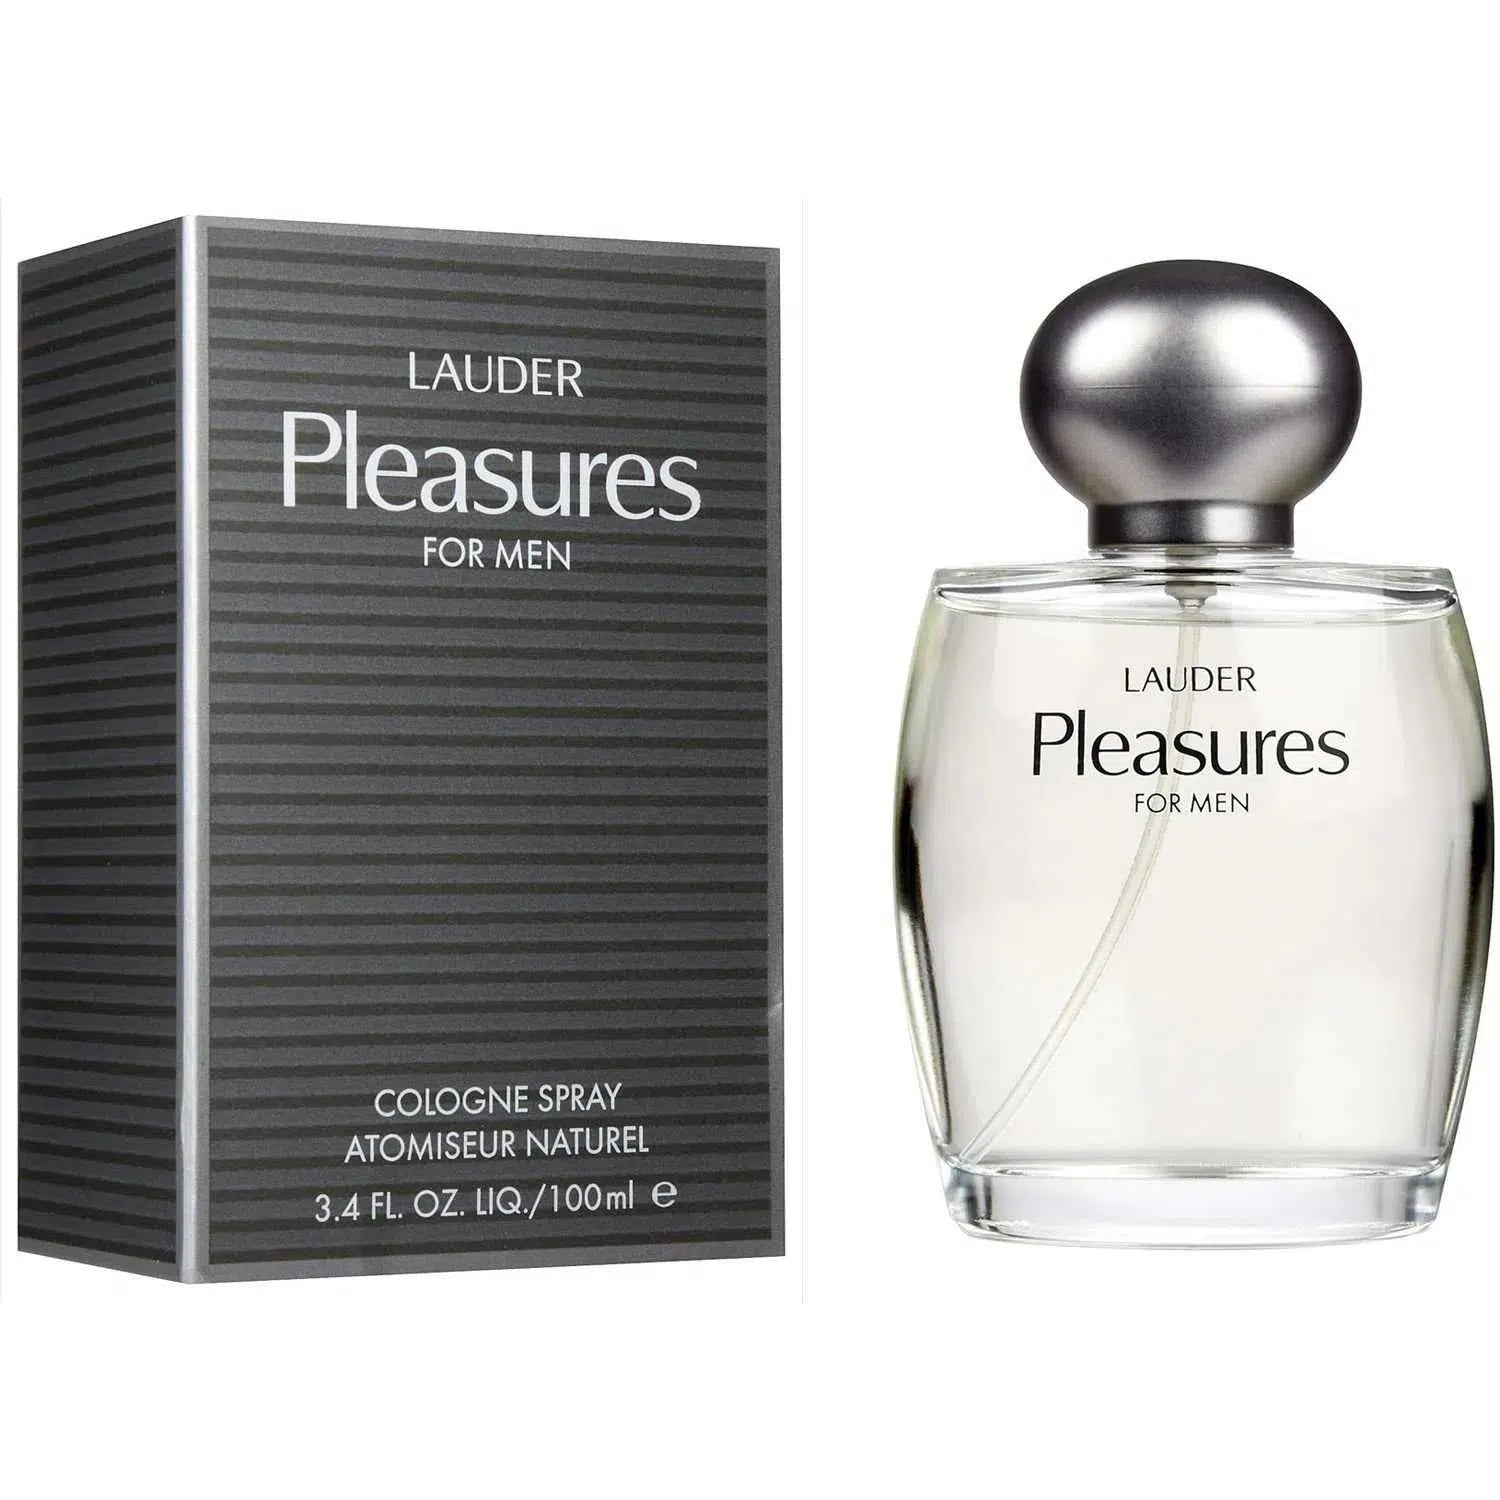 Estee Lauder Pleasures Men 100ml - Perfume Philippines